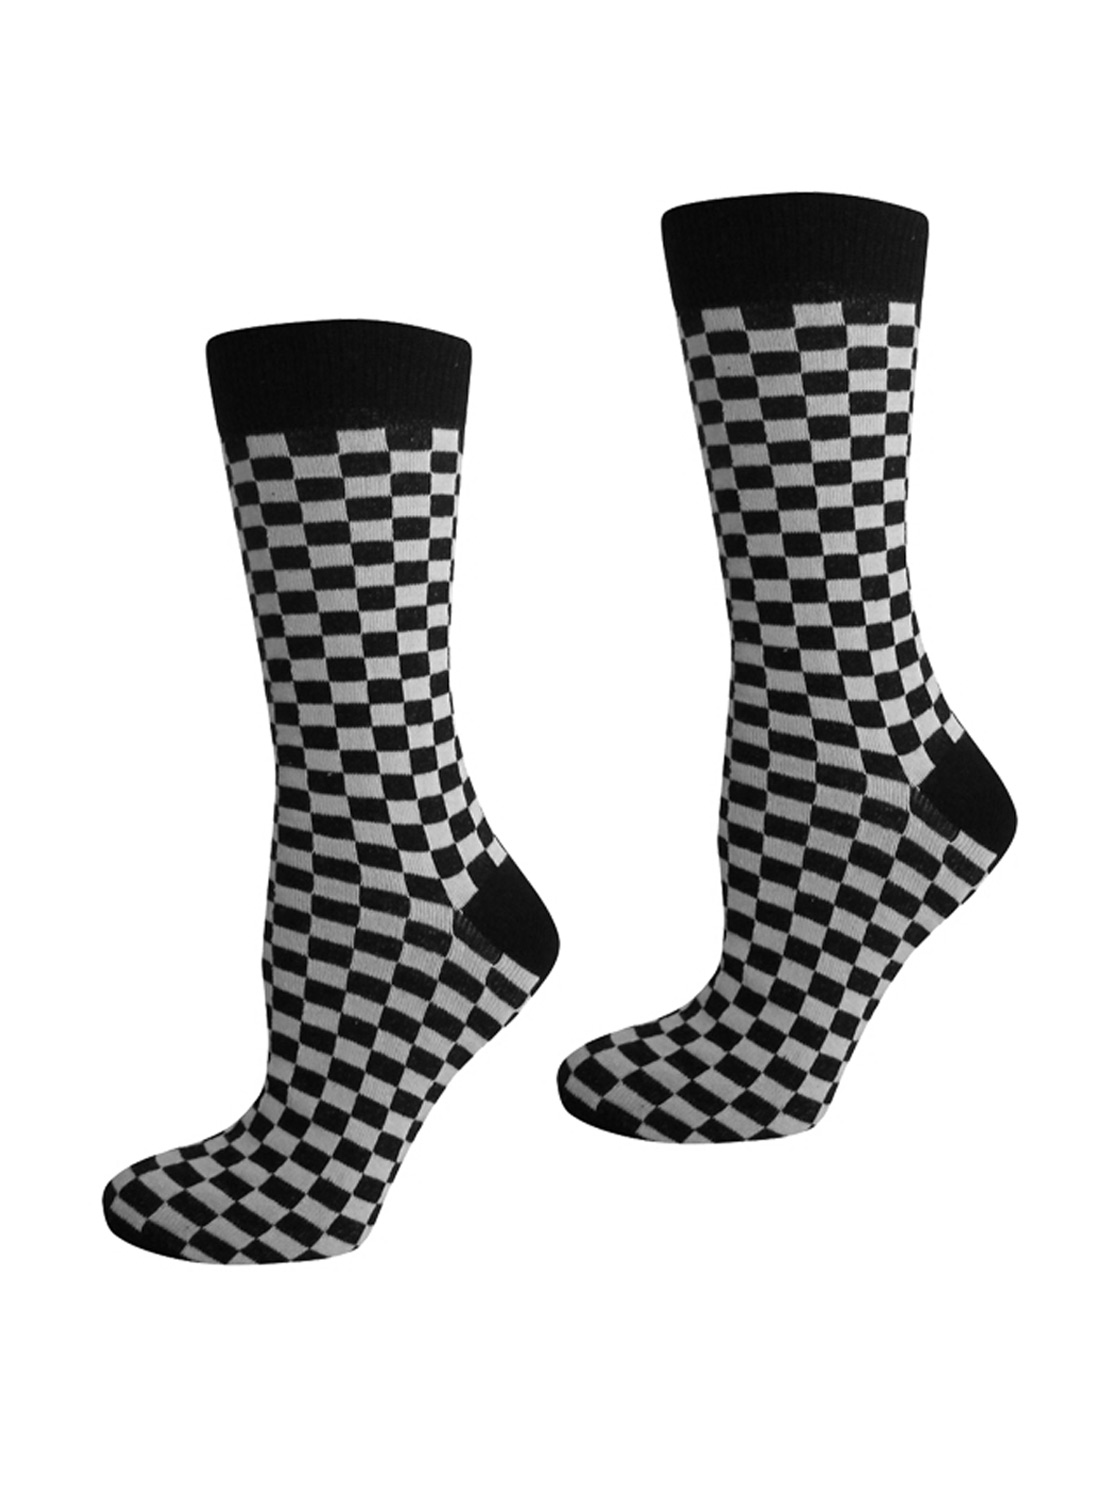 Men checkered Socks Black/White